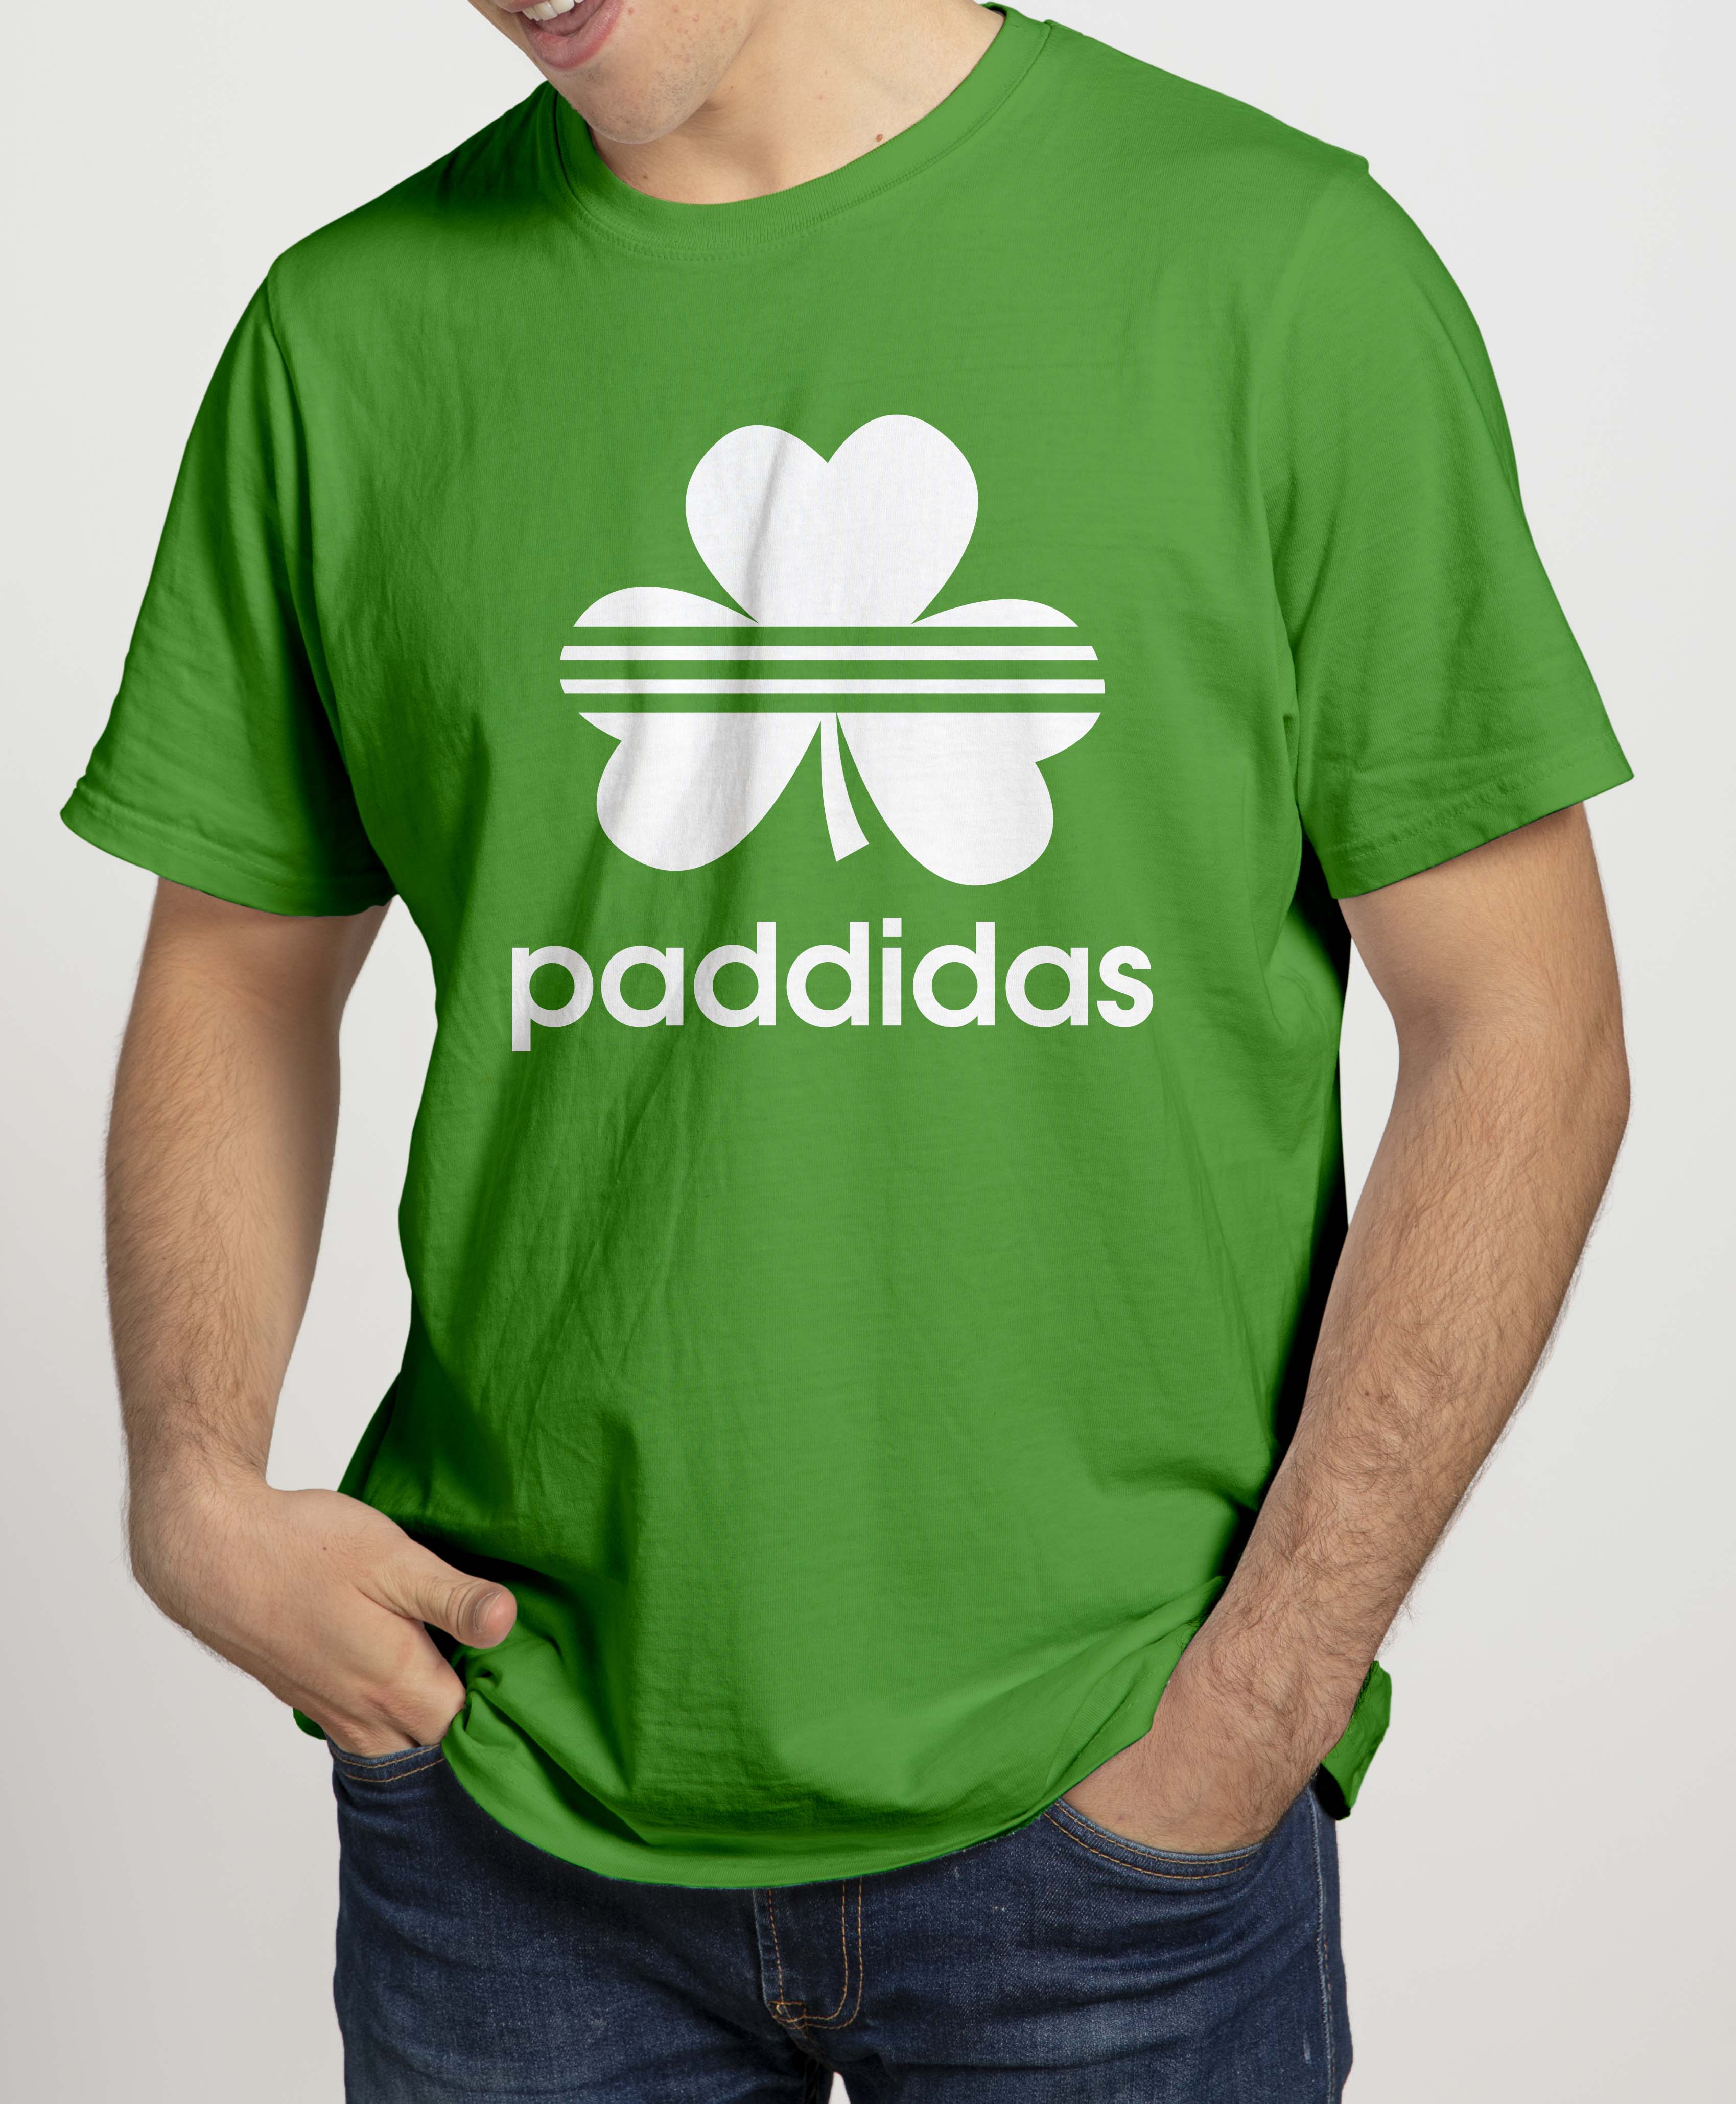 PADDIDAS Mens T-Shirts Cara Craft S GREEN 